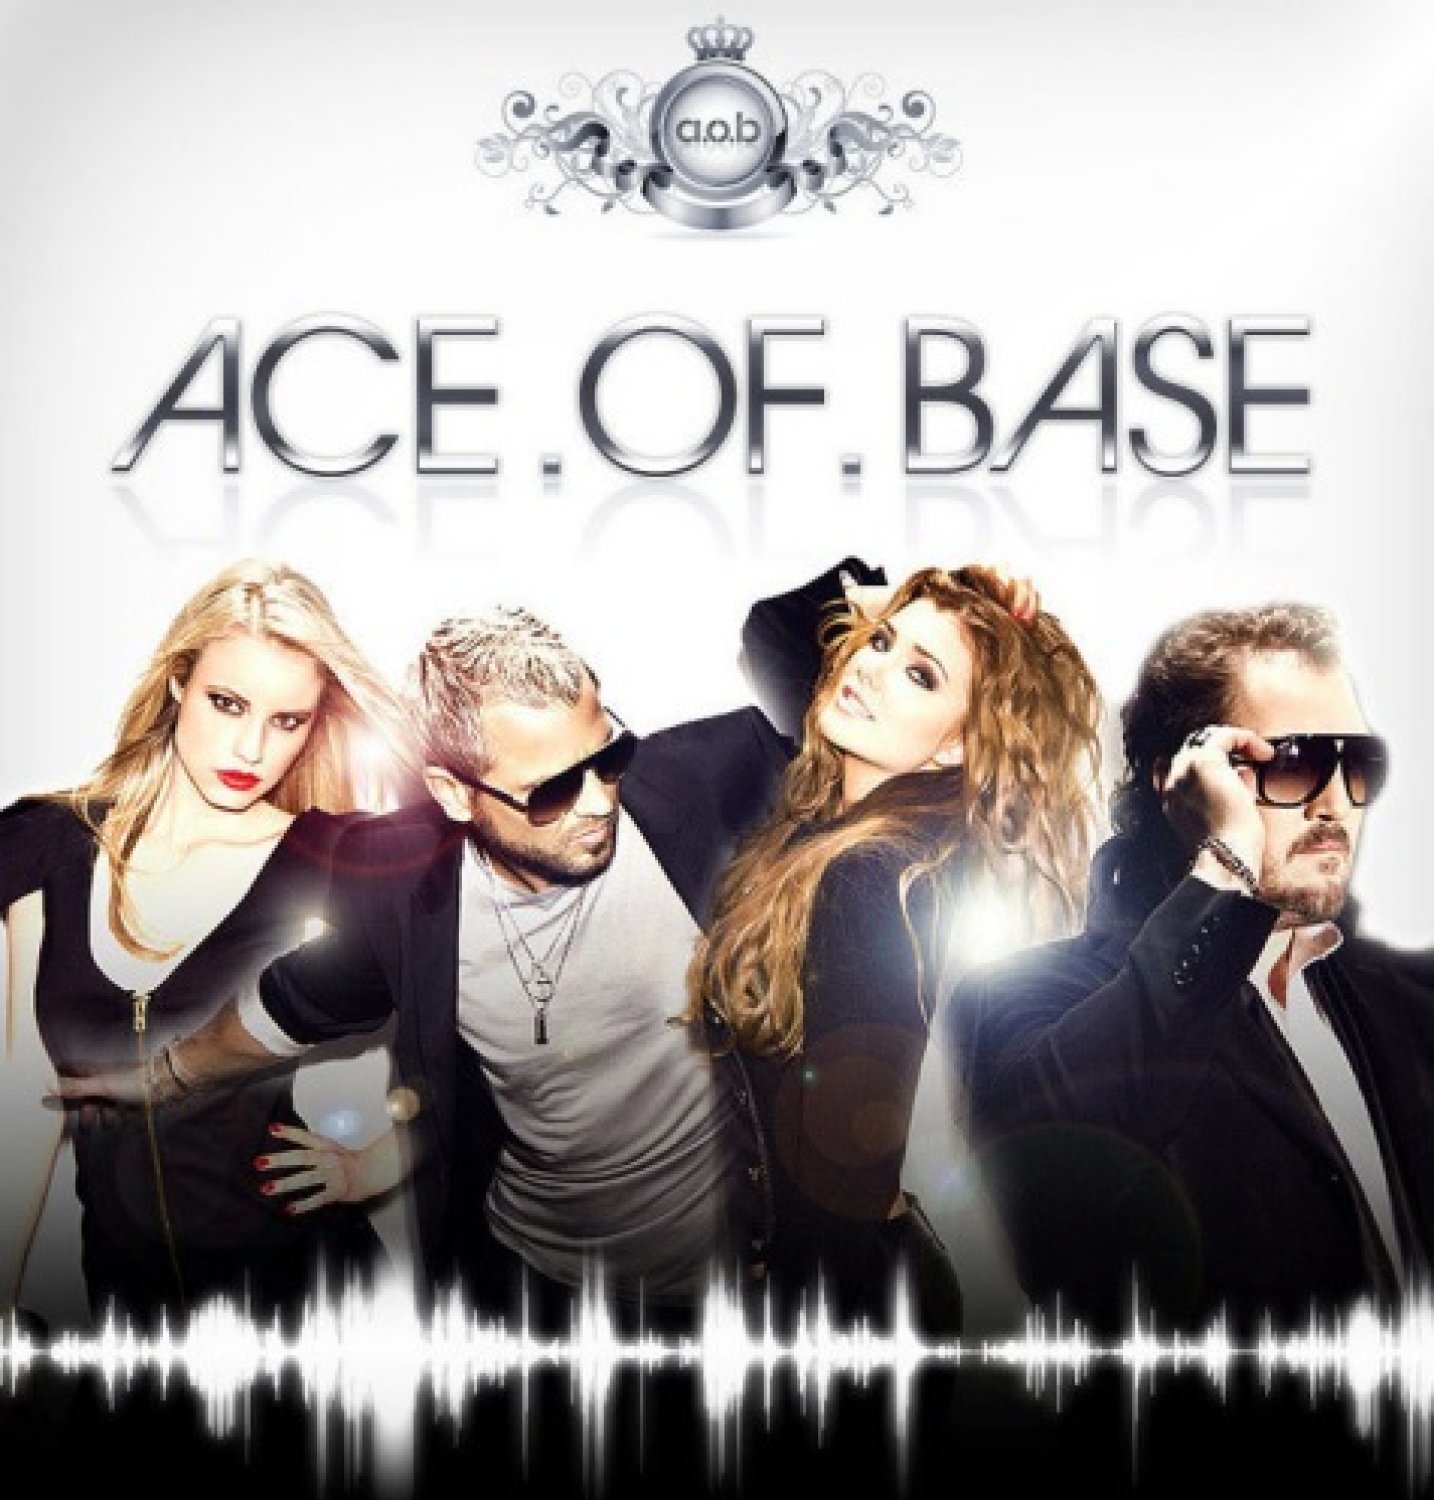 All for you, le nouveau single d'Ace of Base